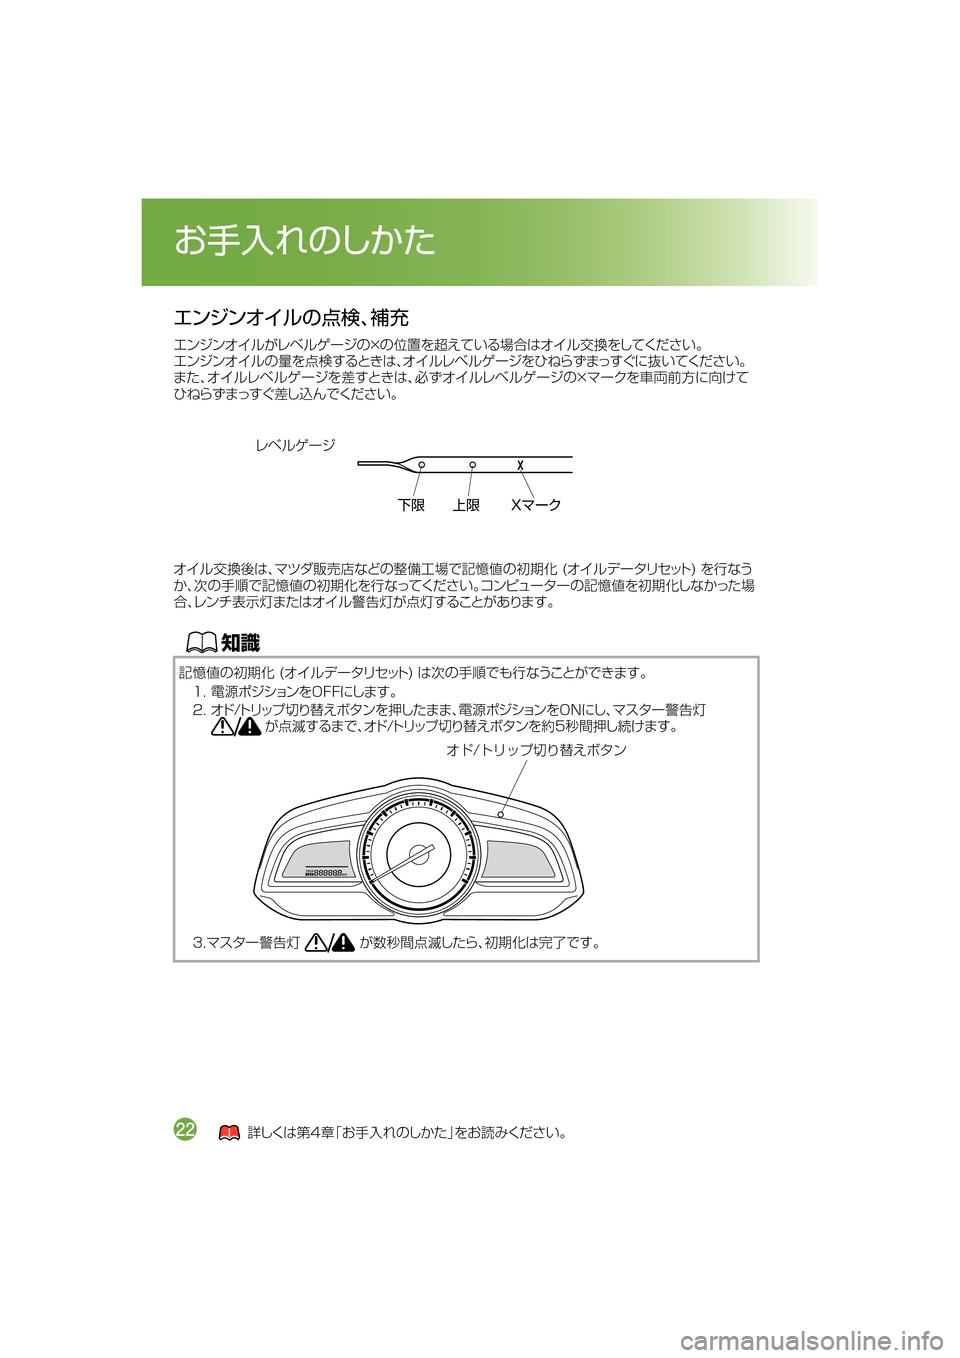 MAZDA MODEL DEMIO 2014  デミオ｜取扱説明書 (in Japanese) ¤ï´ï¦ çw:Uz4	F
